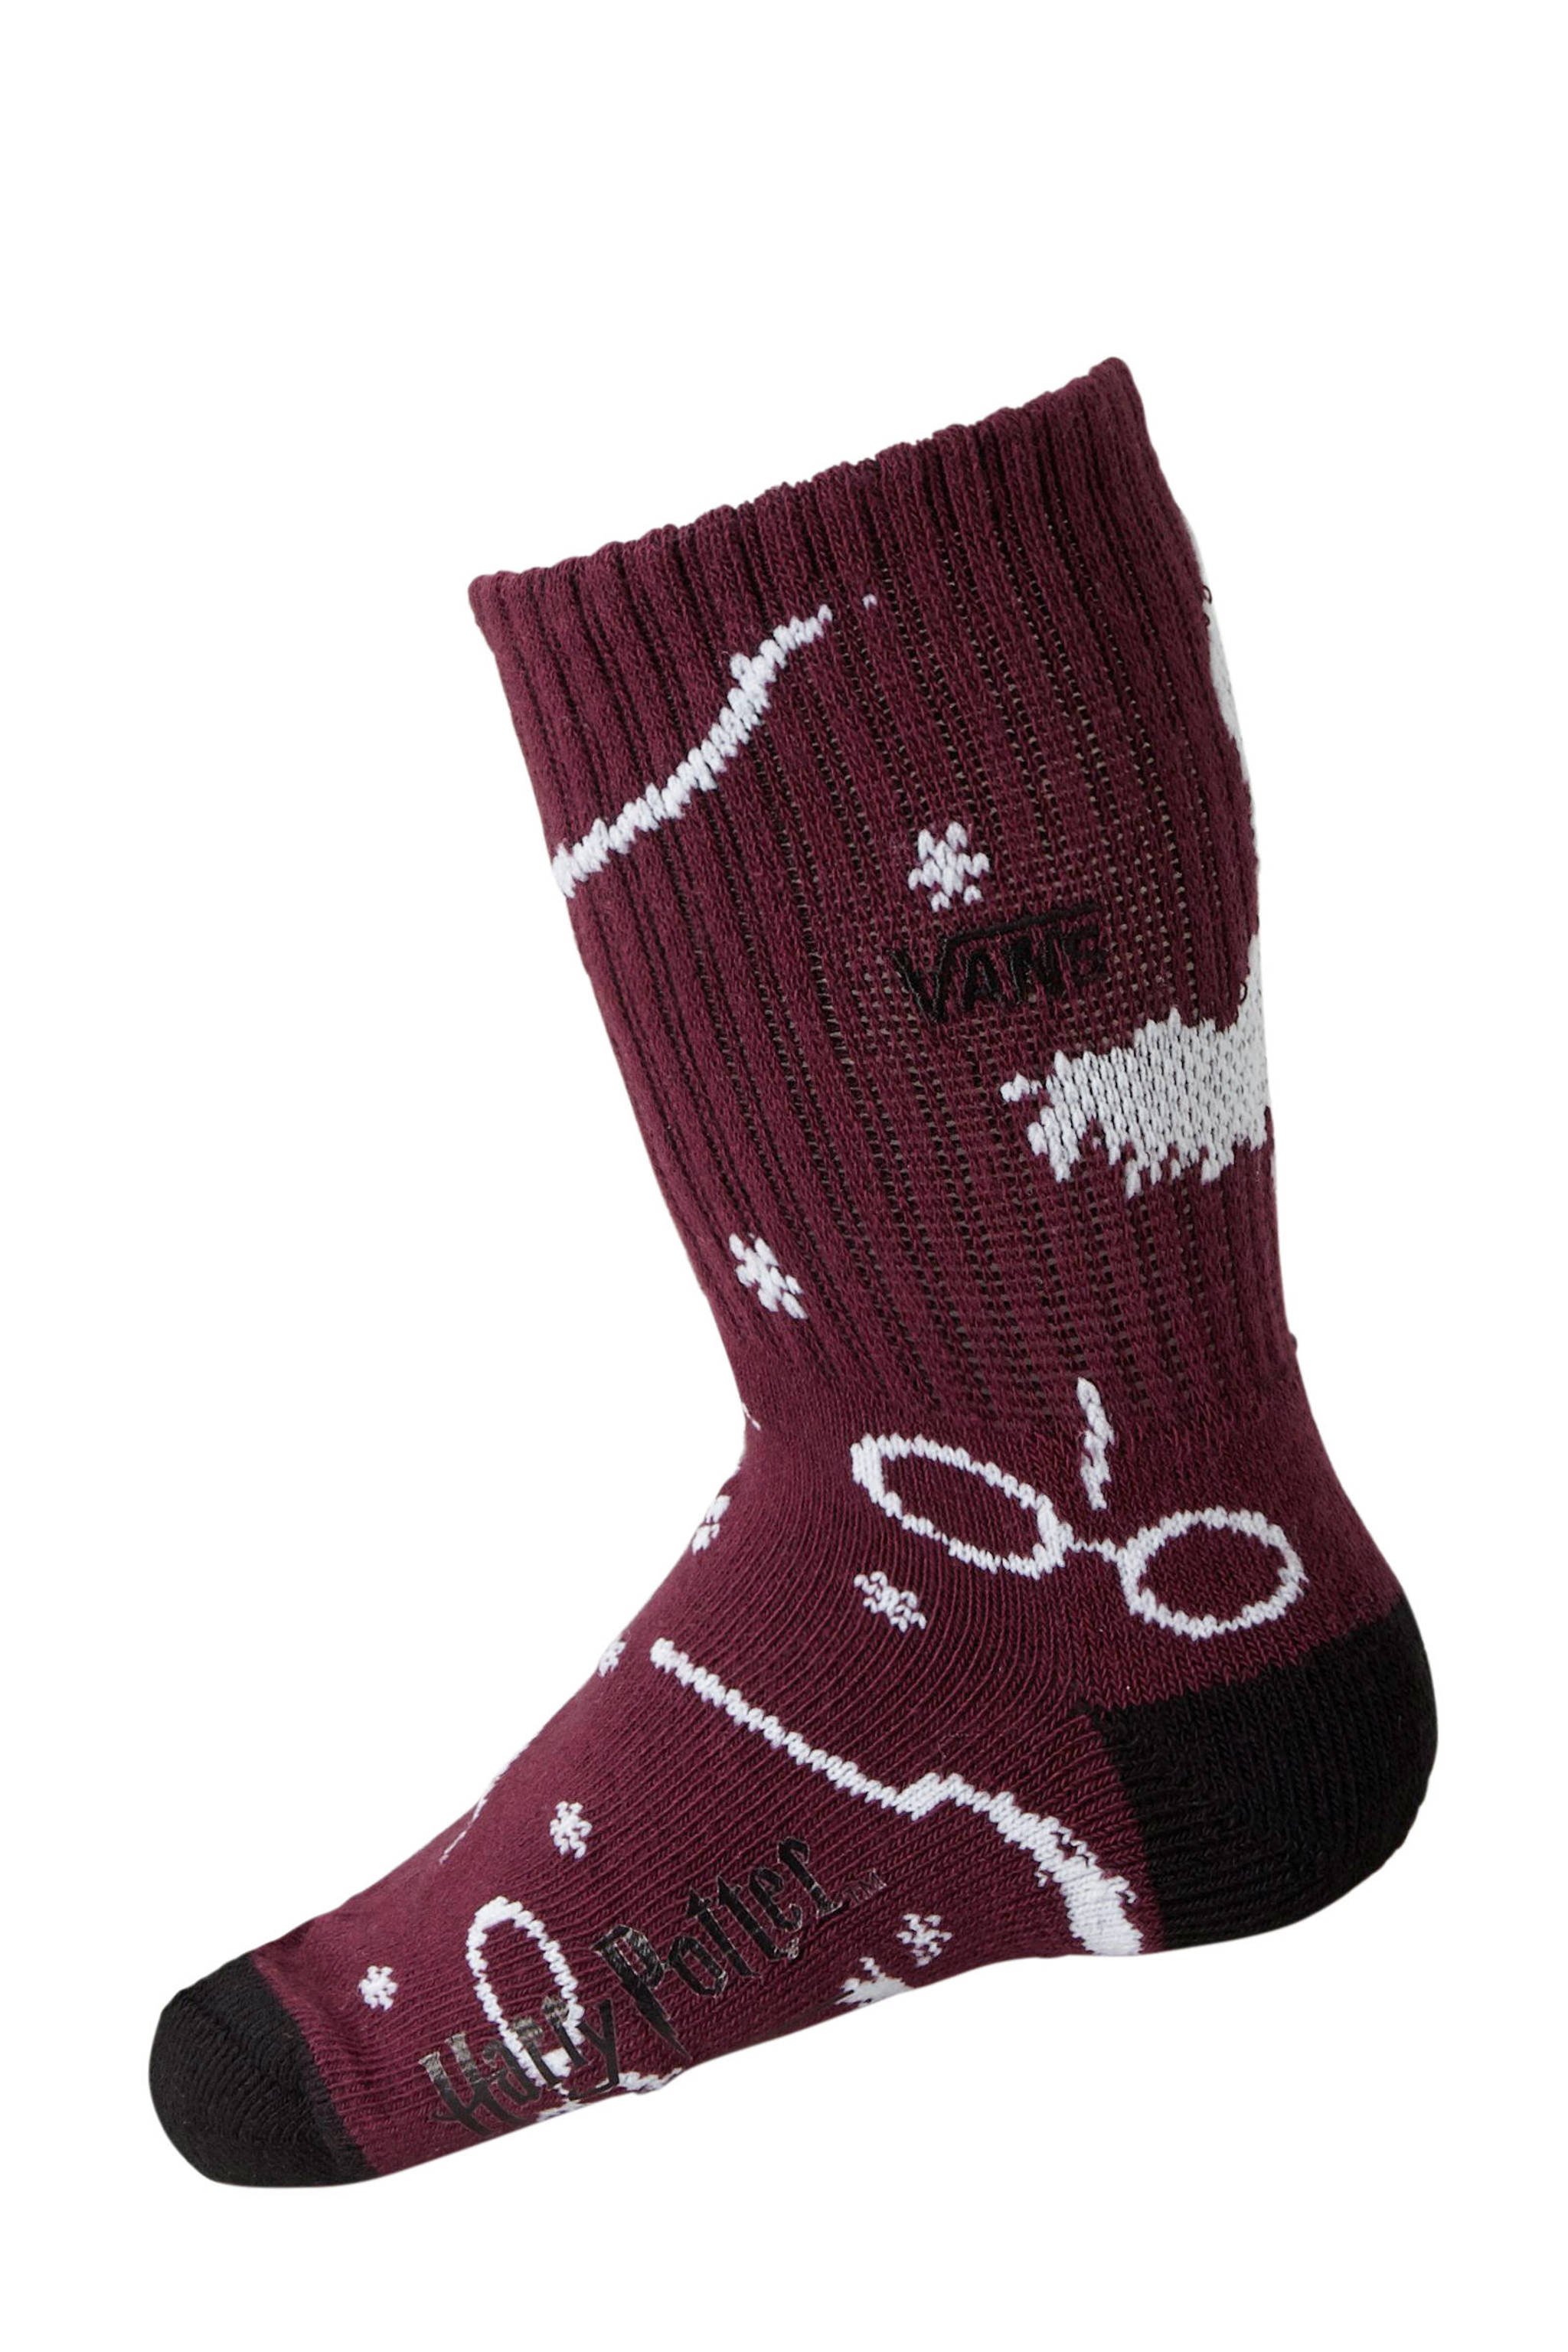 Wonderbaarlijk VANS Harry Potter sokken | wehkamp XN-45